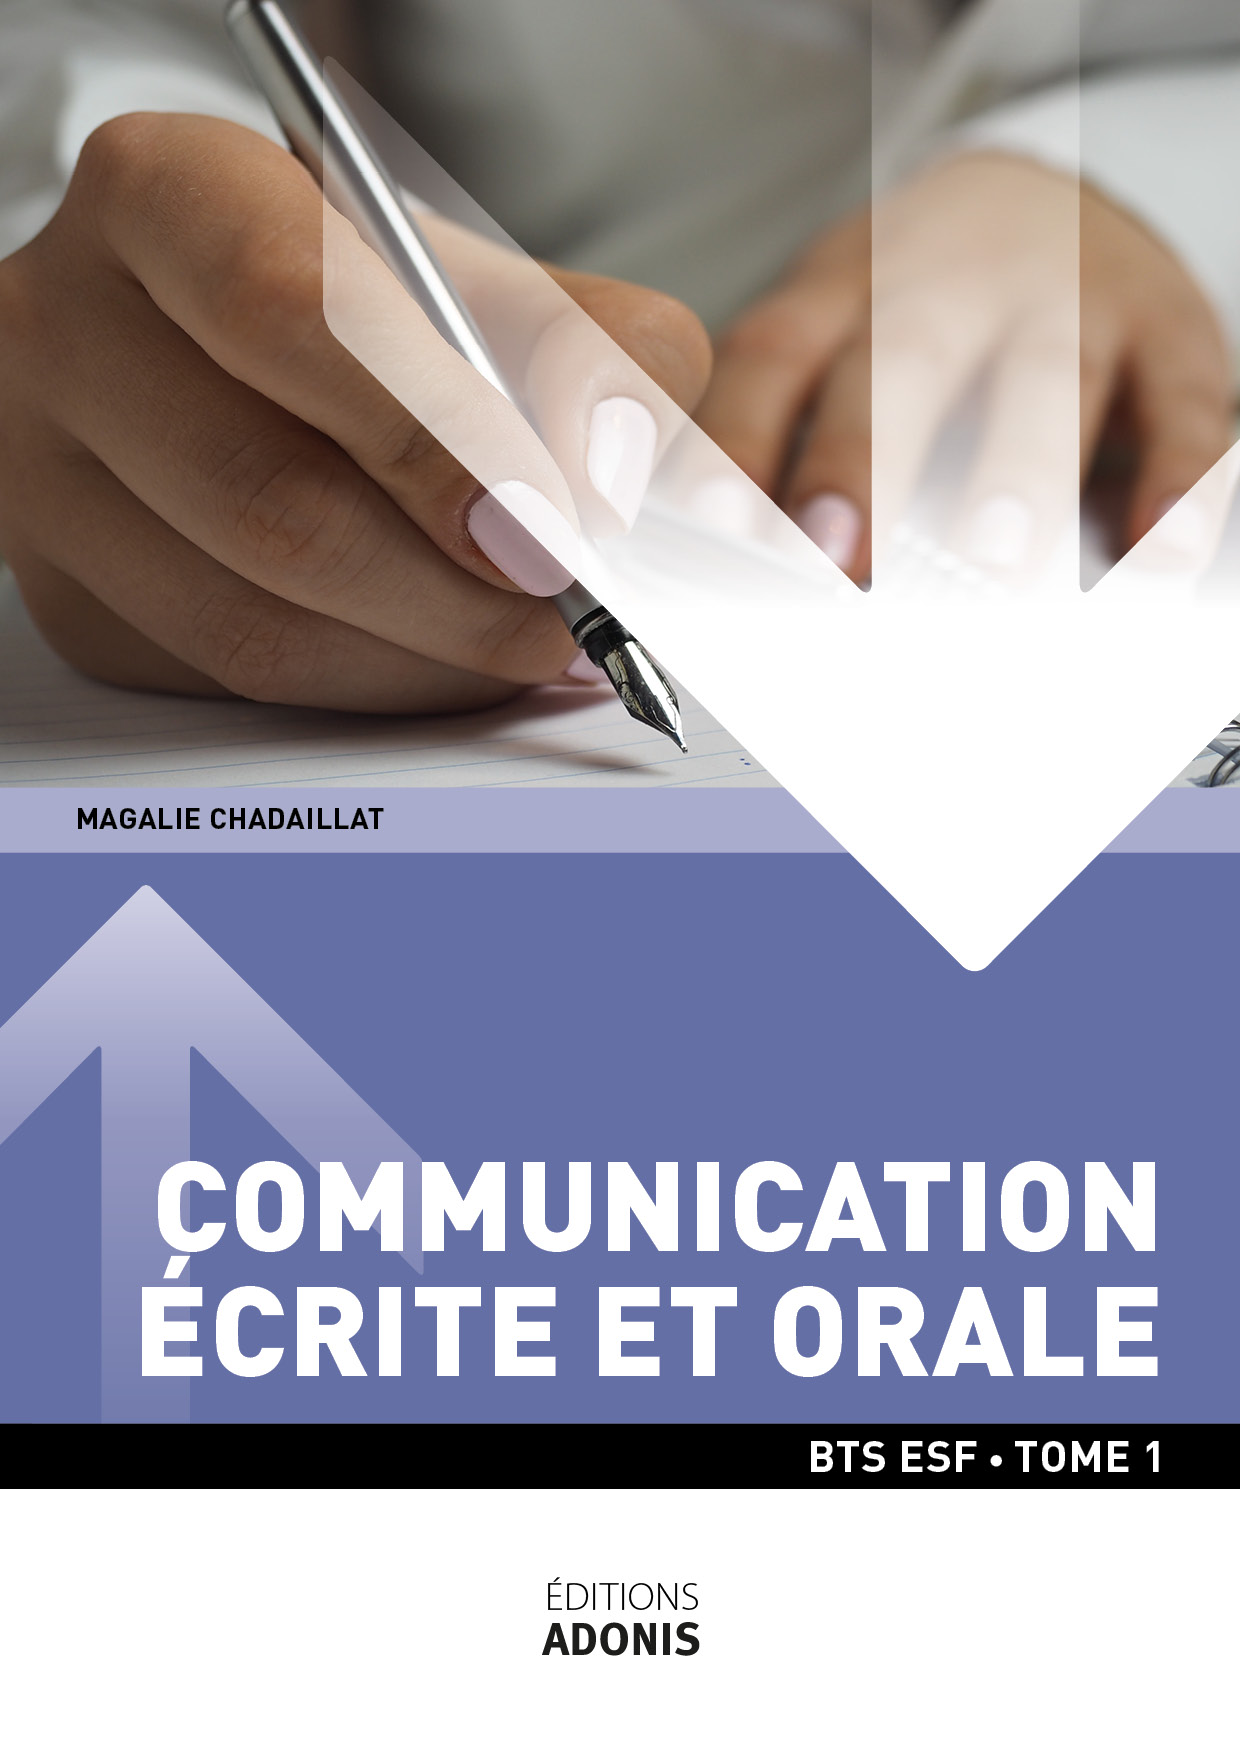 BTS ESF - Communication écrite et orale Tome 1